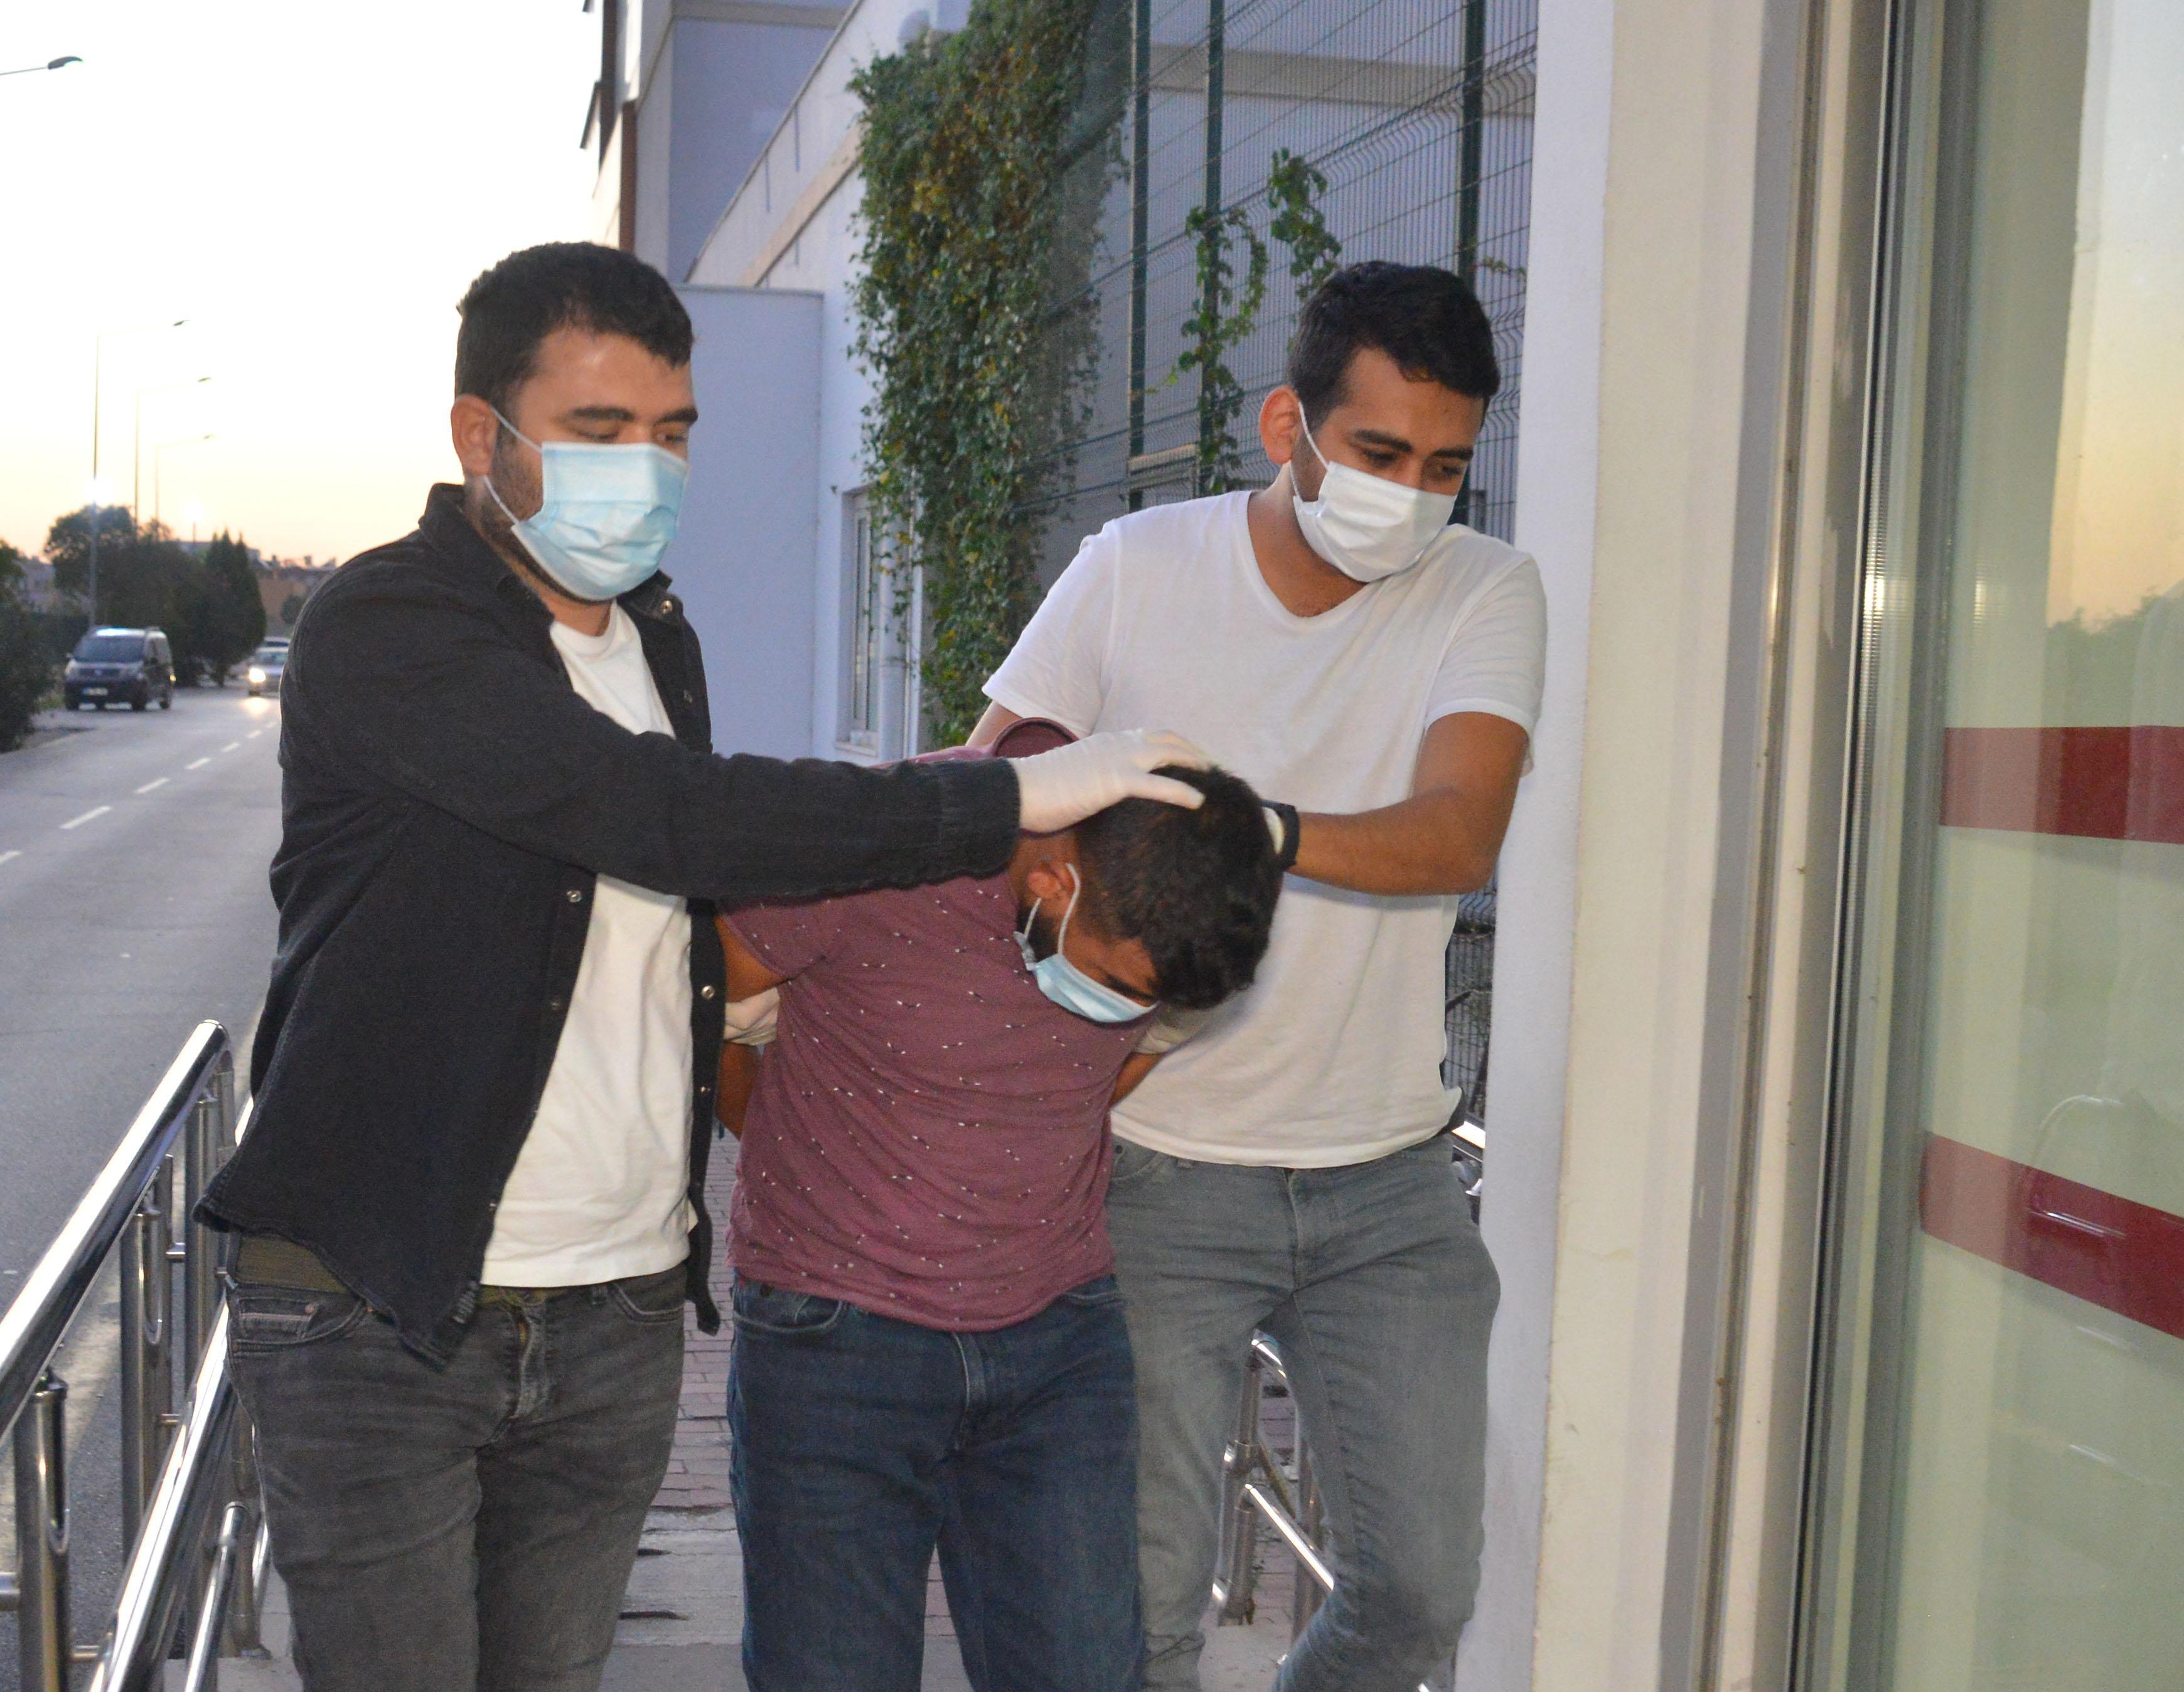 Adanada Cono aşiretine 500 polis ile hava destekli operasyon: 30 gözaltı kararı